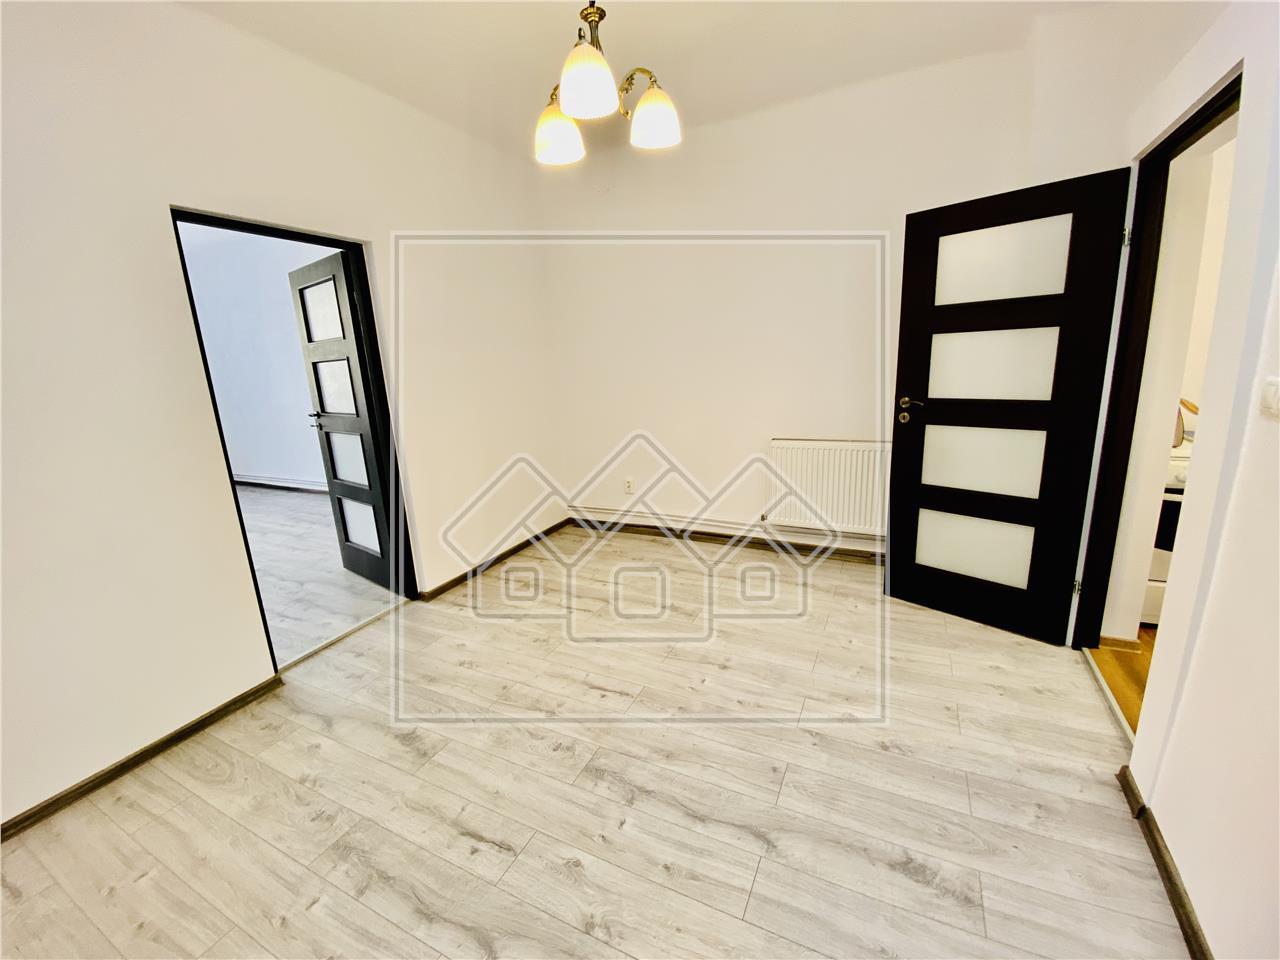 Apartament de vanzare in Sibiu - 2 camere si gradina - zona Lupeni